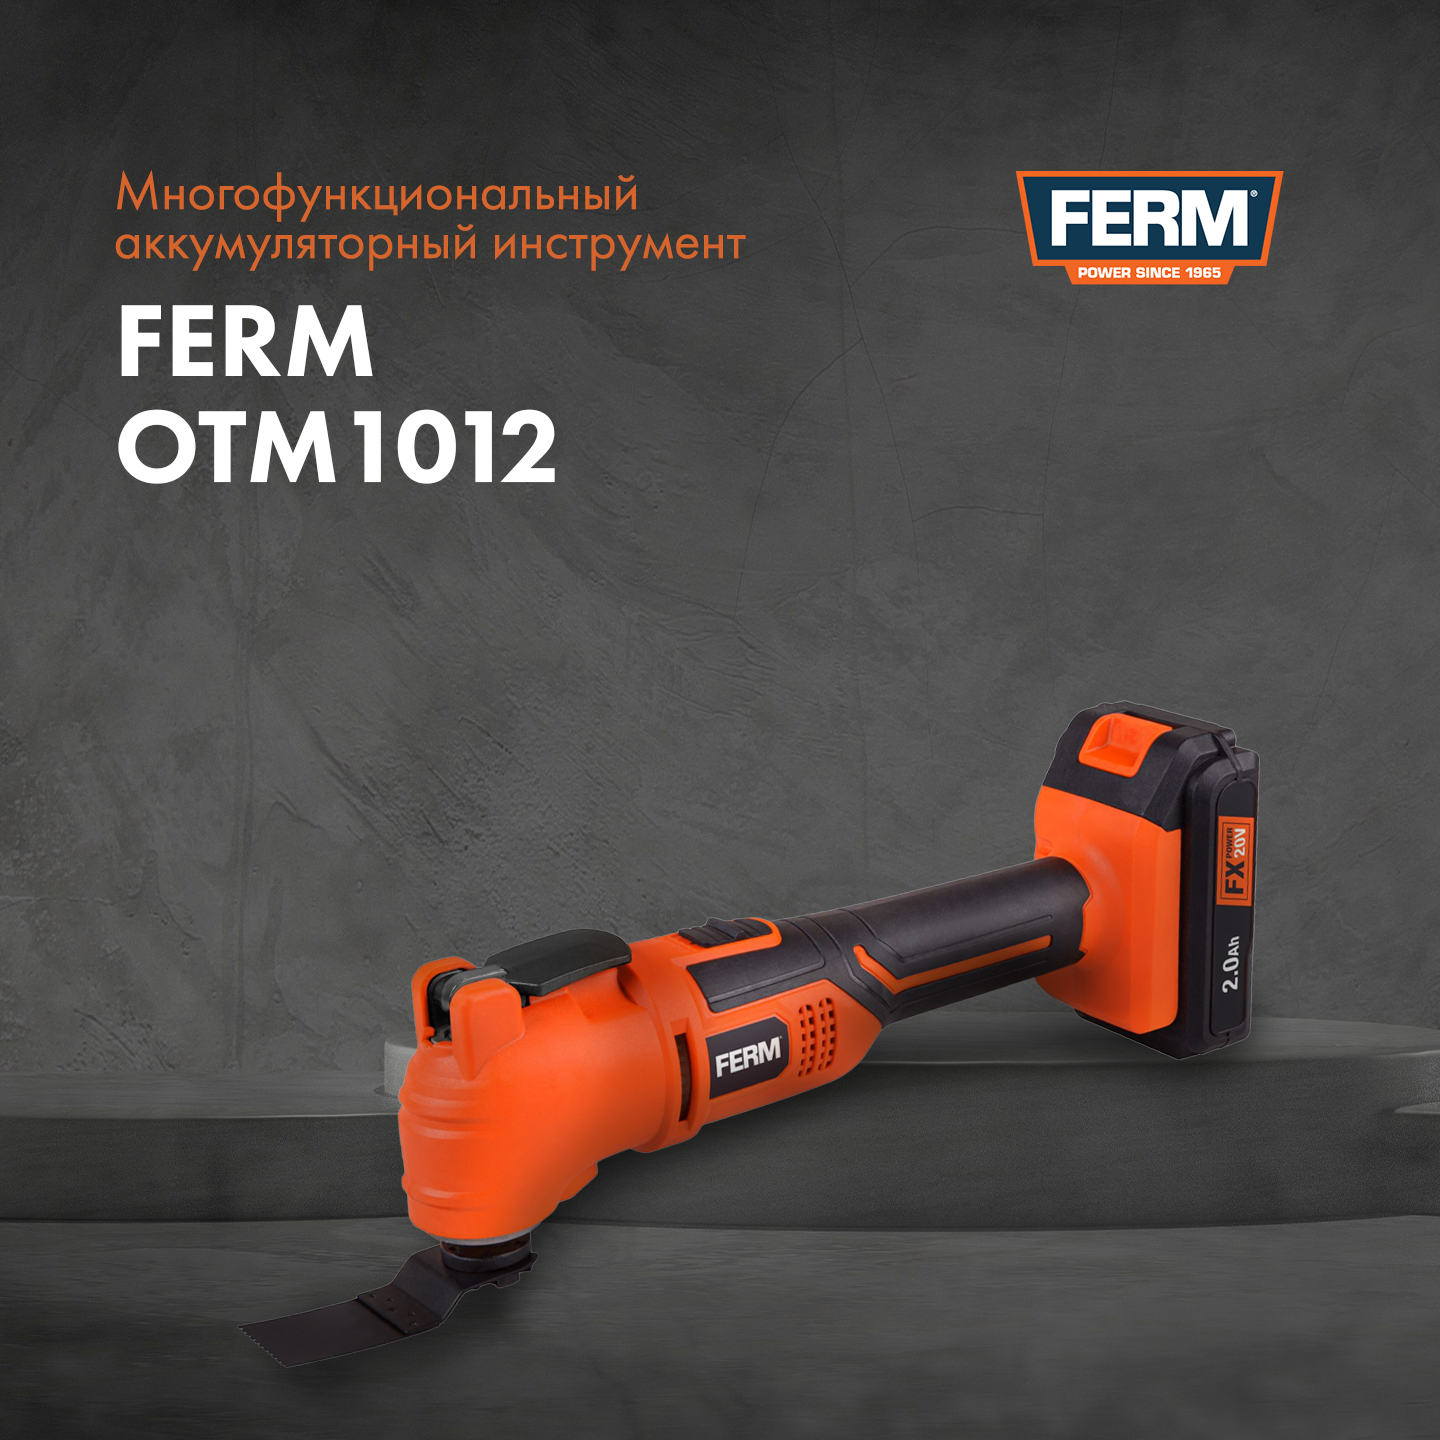 Многофункциональный аккумуляторный инструмент FERM OTM1012 .